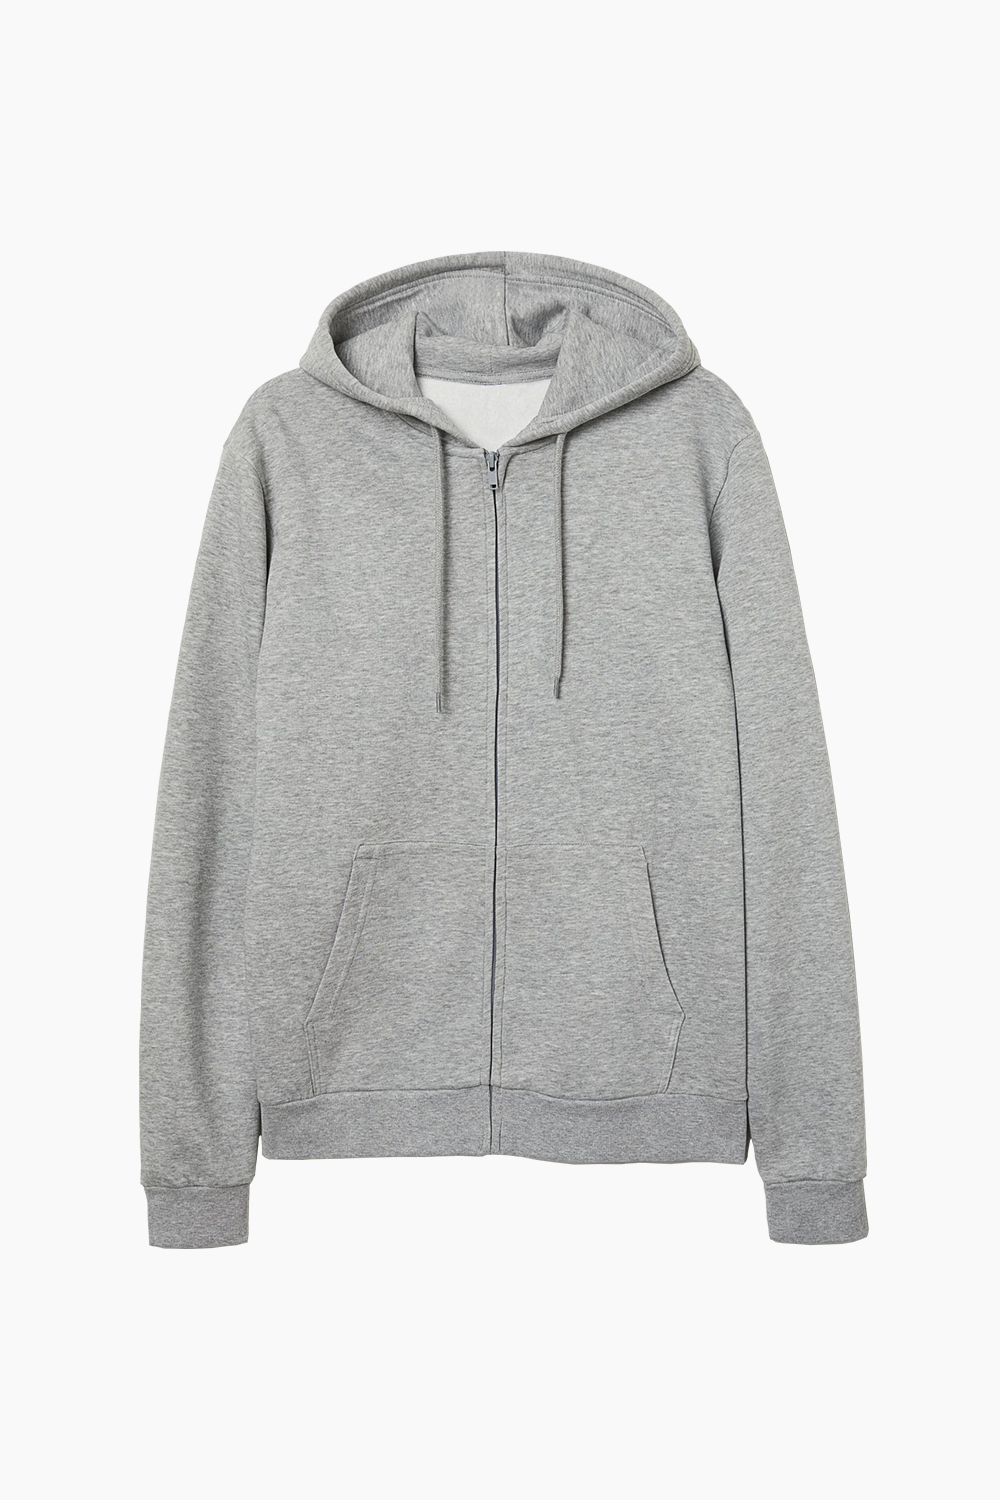 GRAY basic zipped hoodie